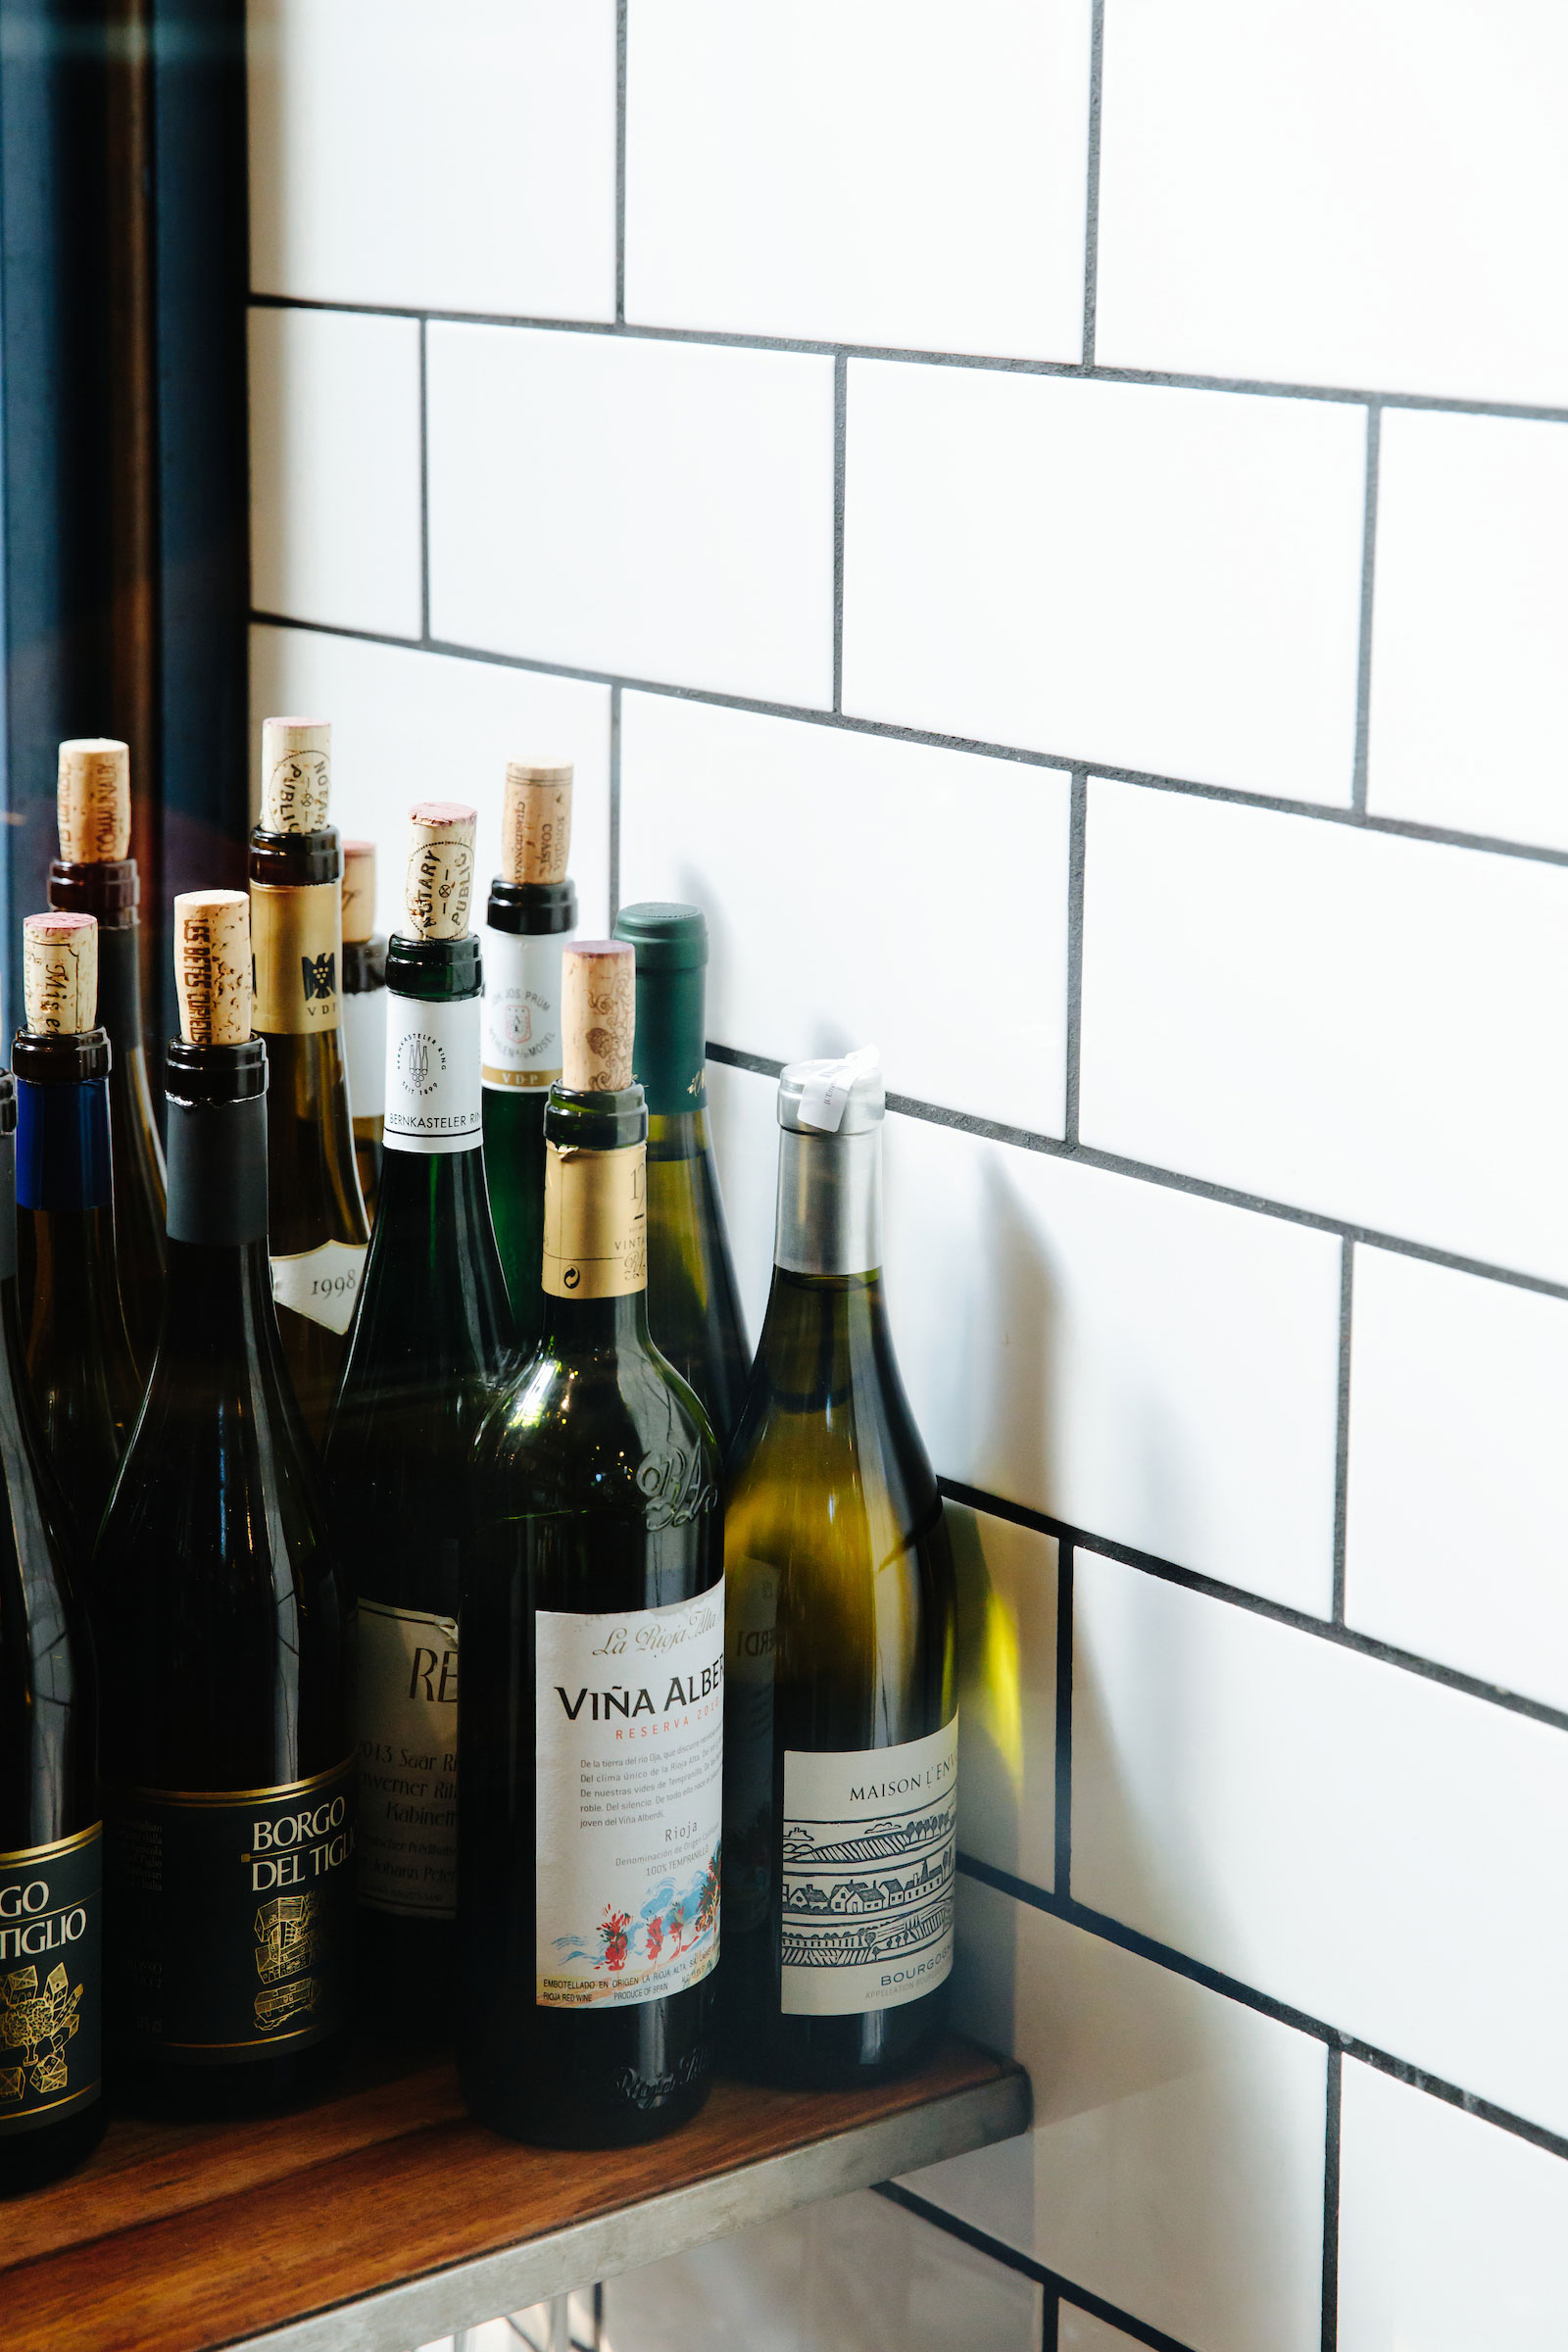 republique-wine-shelf-with-bottles